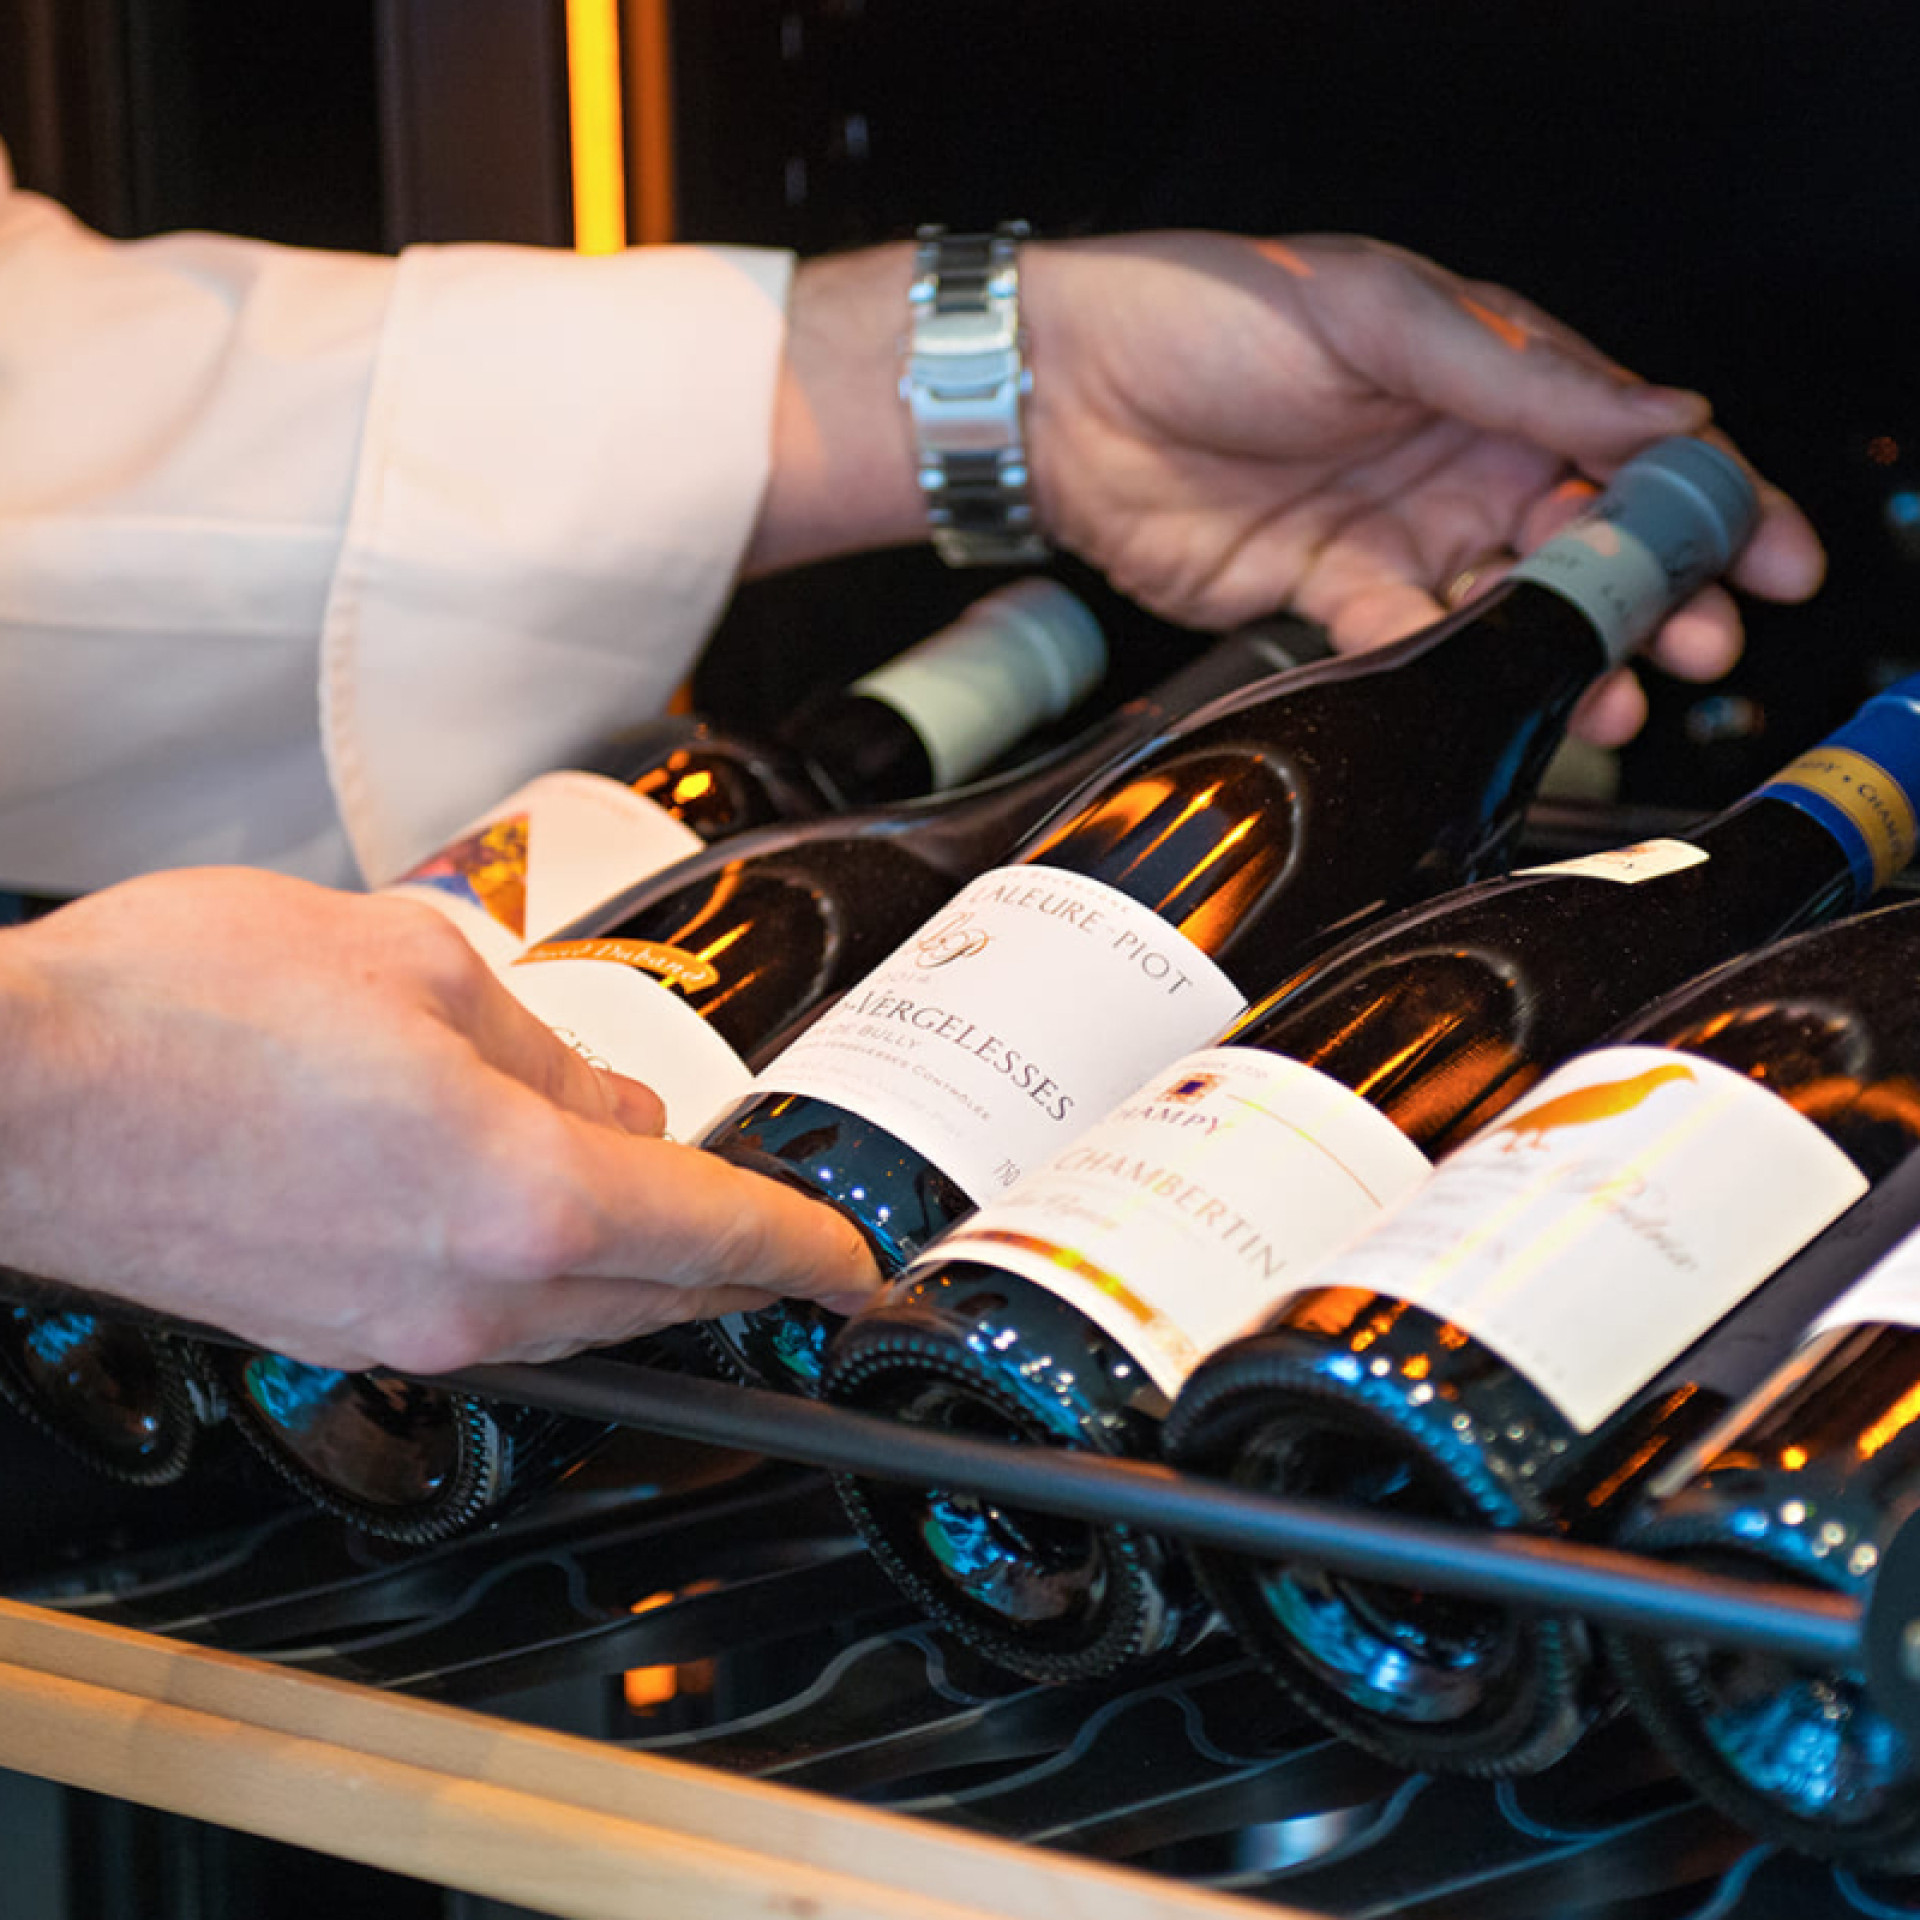 Professioneller Service-Weinkühlschrank. Den Wein auf Temperatur bringen: abkühlen oder kalt stellen. Unabhängige Fächer oder gestaffelte Temperaturen. Regale, einfacher Zugang zu Flaschen, Regalzubehör.